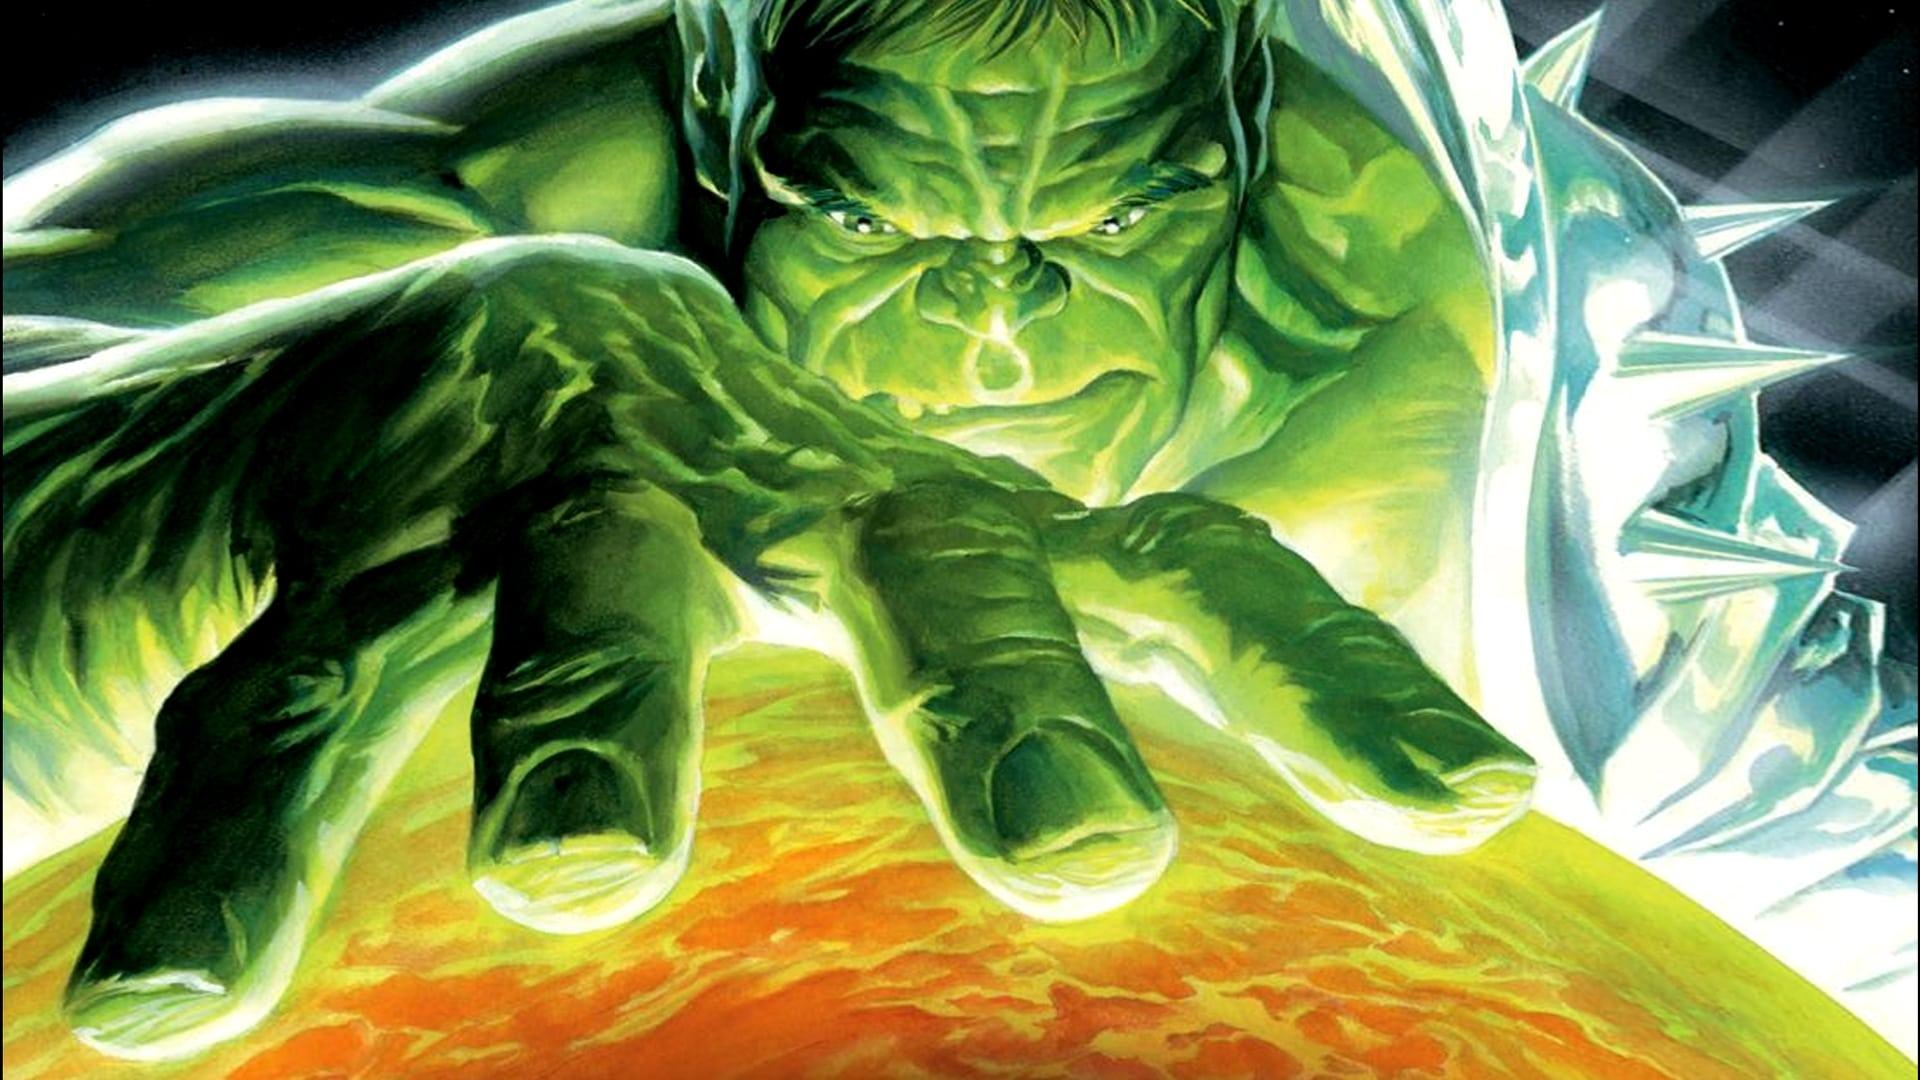 Planet Hulk backdrop